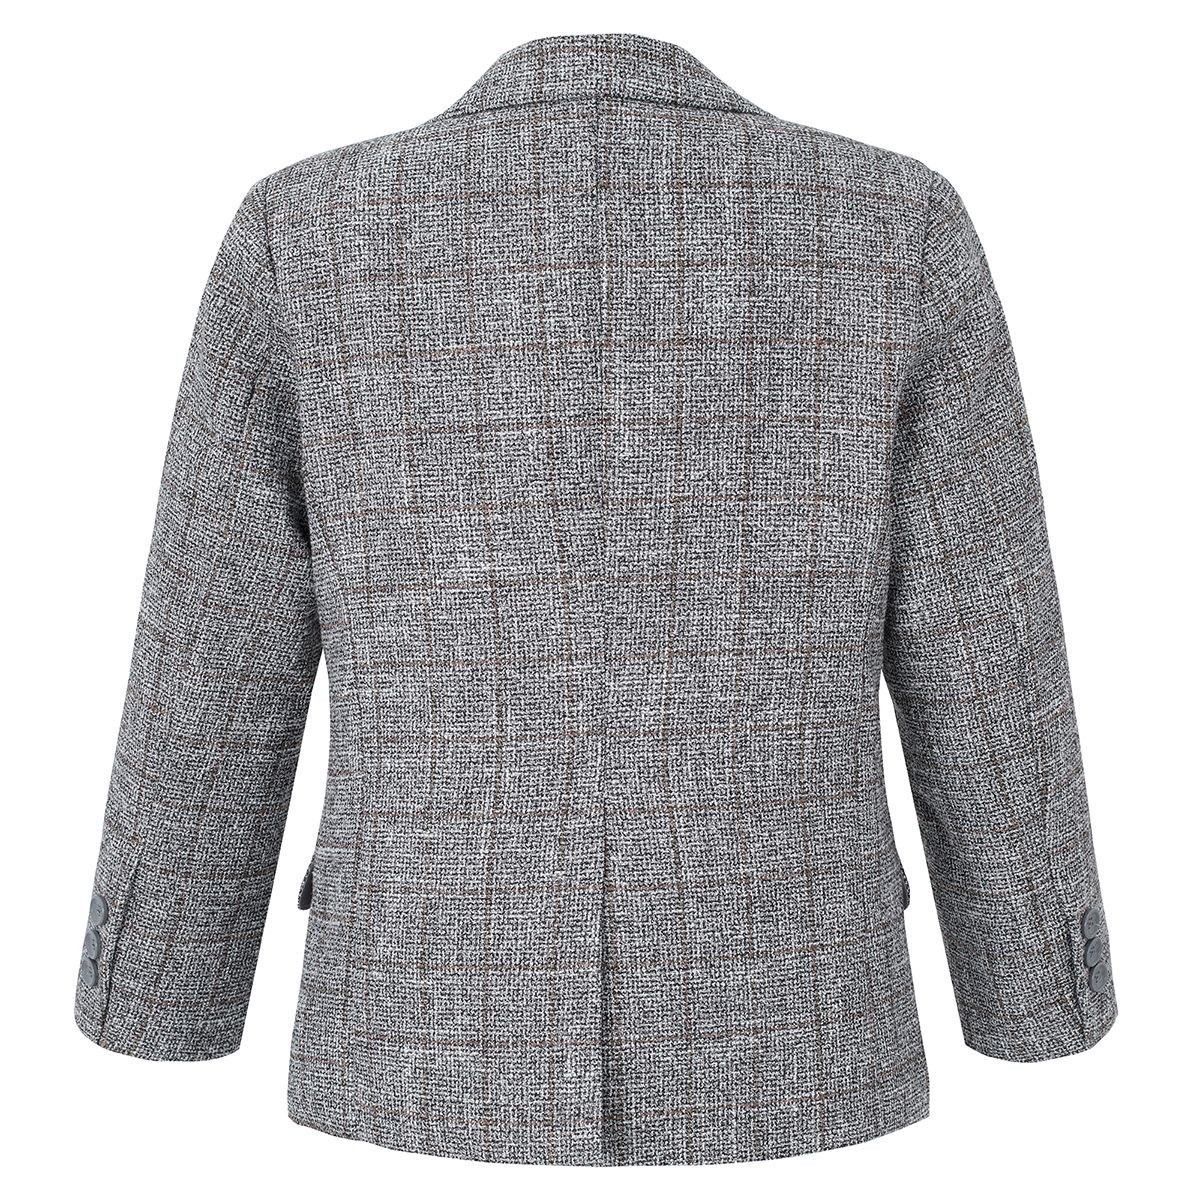 Jungen-Baumwoll-Tweed-ähnlicher Karo-Tailored-Fit-Blazer